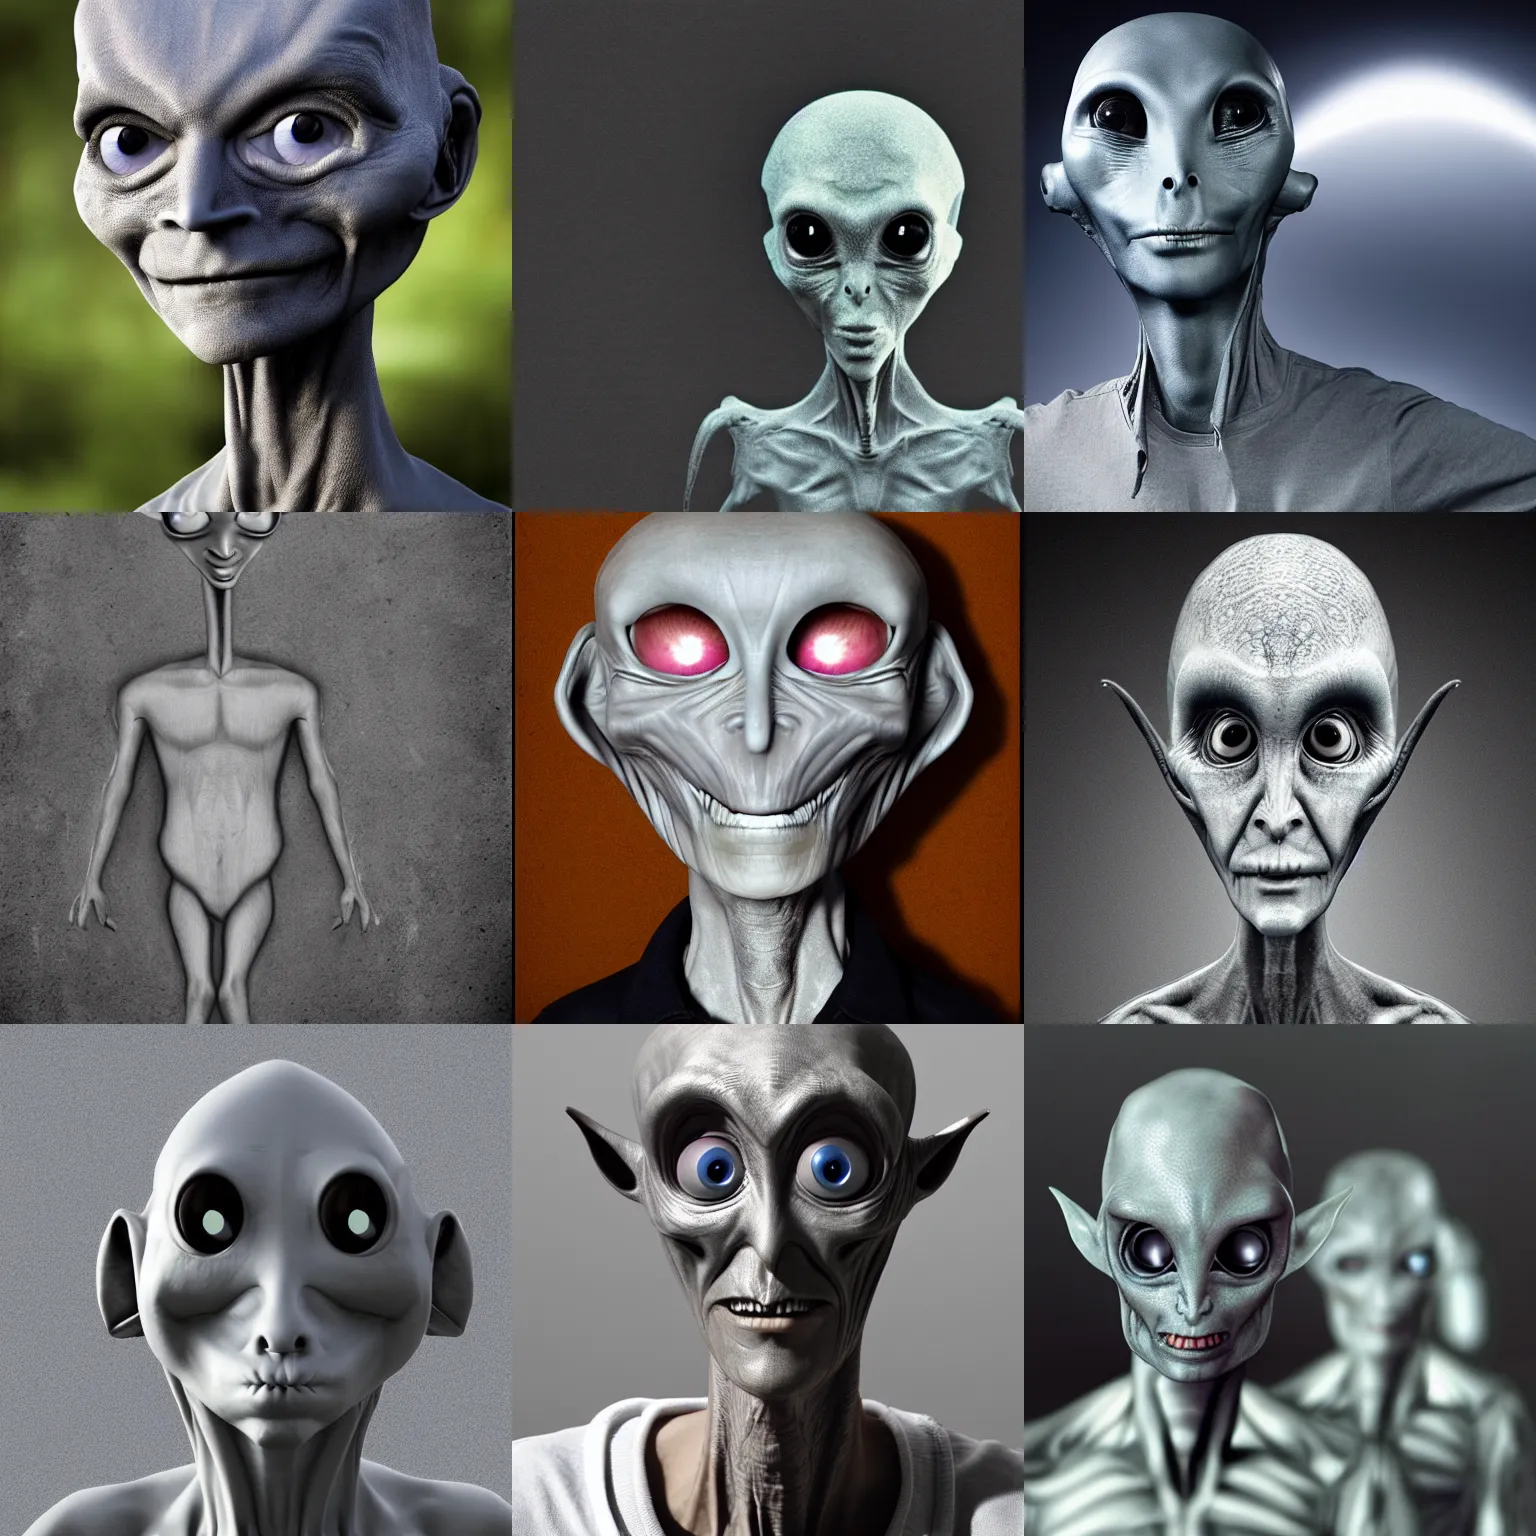 Prompt: Extraterrestrial grey alien, photograph